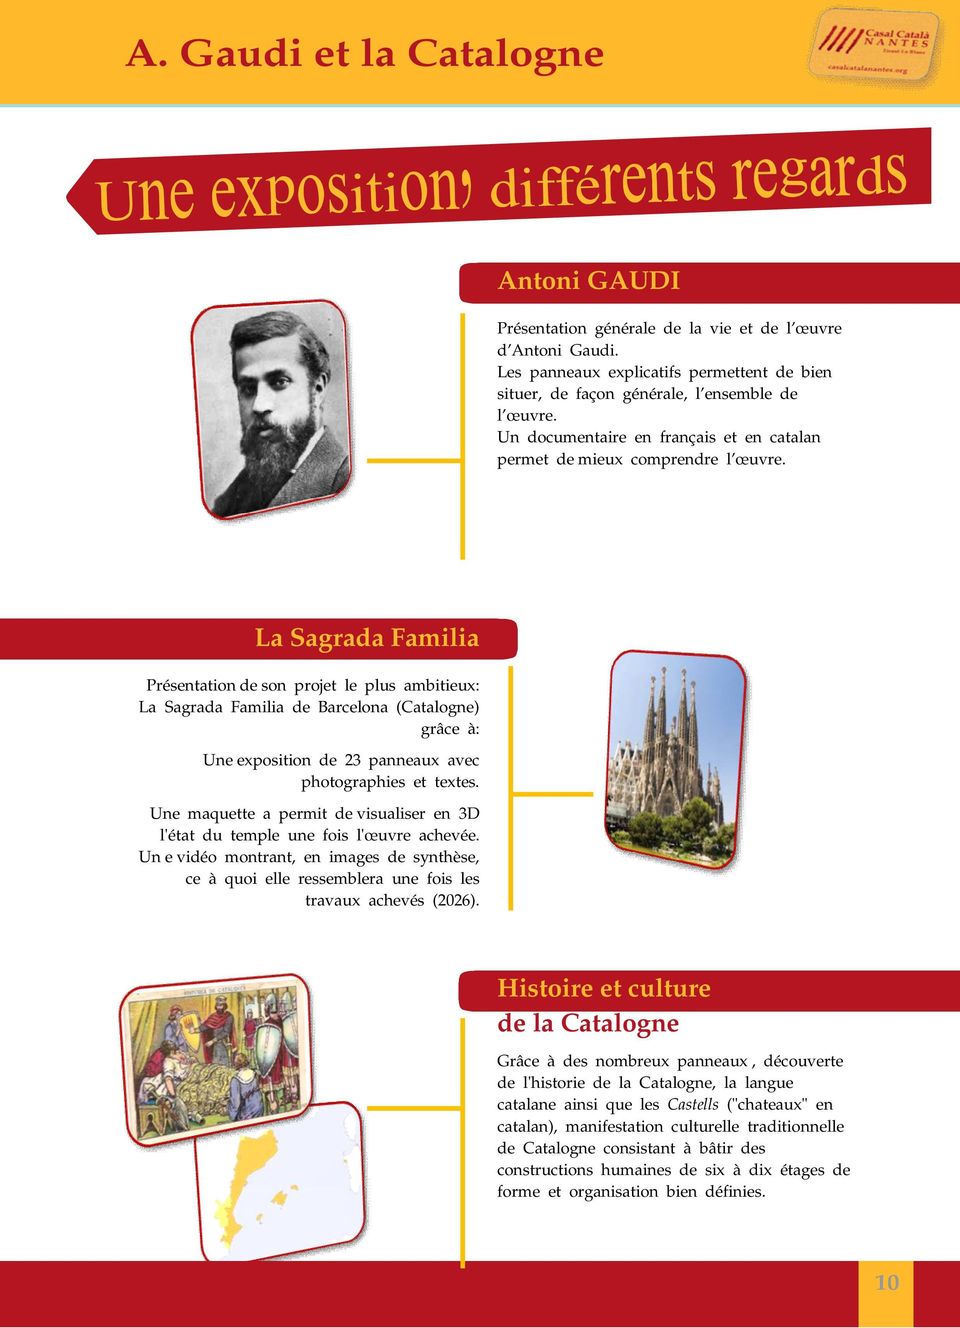 La Sagrada Familia Présentation de son projet le plus ambitieux: La Sagrada Familia de Barcelona (Catalogne) grâce à: Une exposition de 23 panneaux avec photographies et textes.